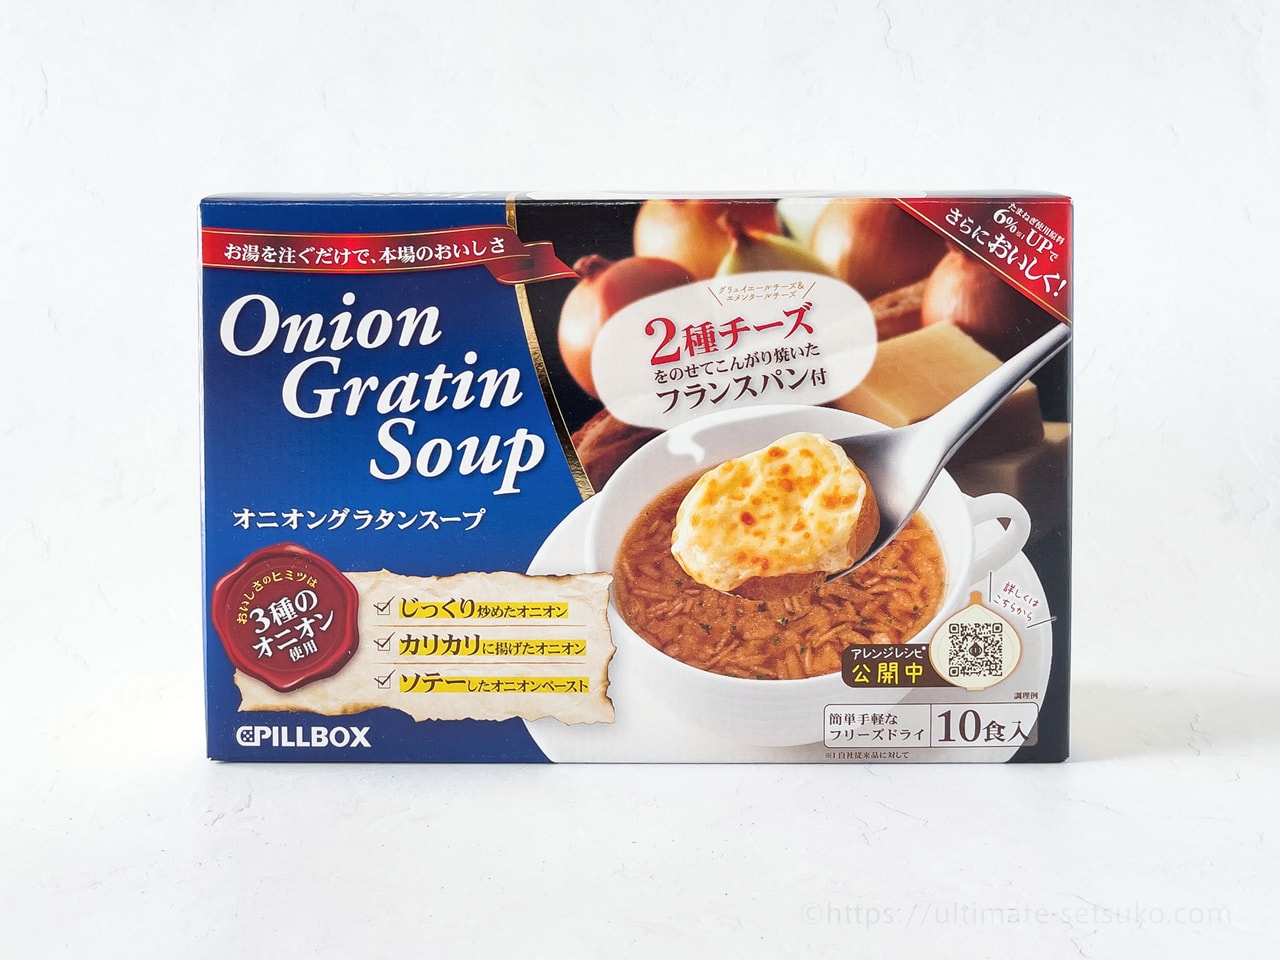 コストコ青い箱のオニオングラタンスープが超本格で驚き こんな美味しい商品があったなんて